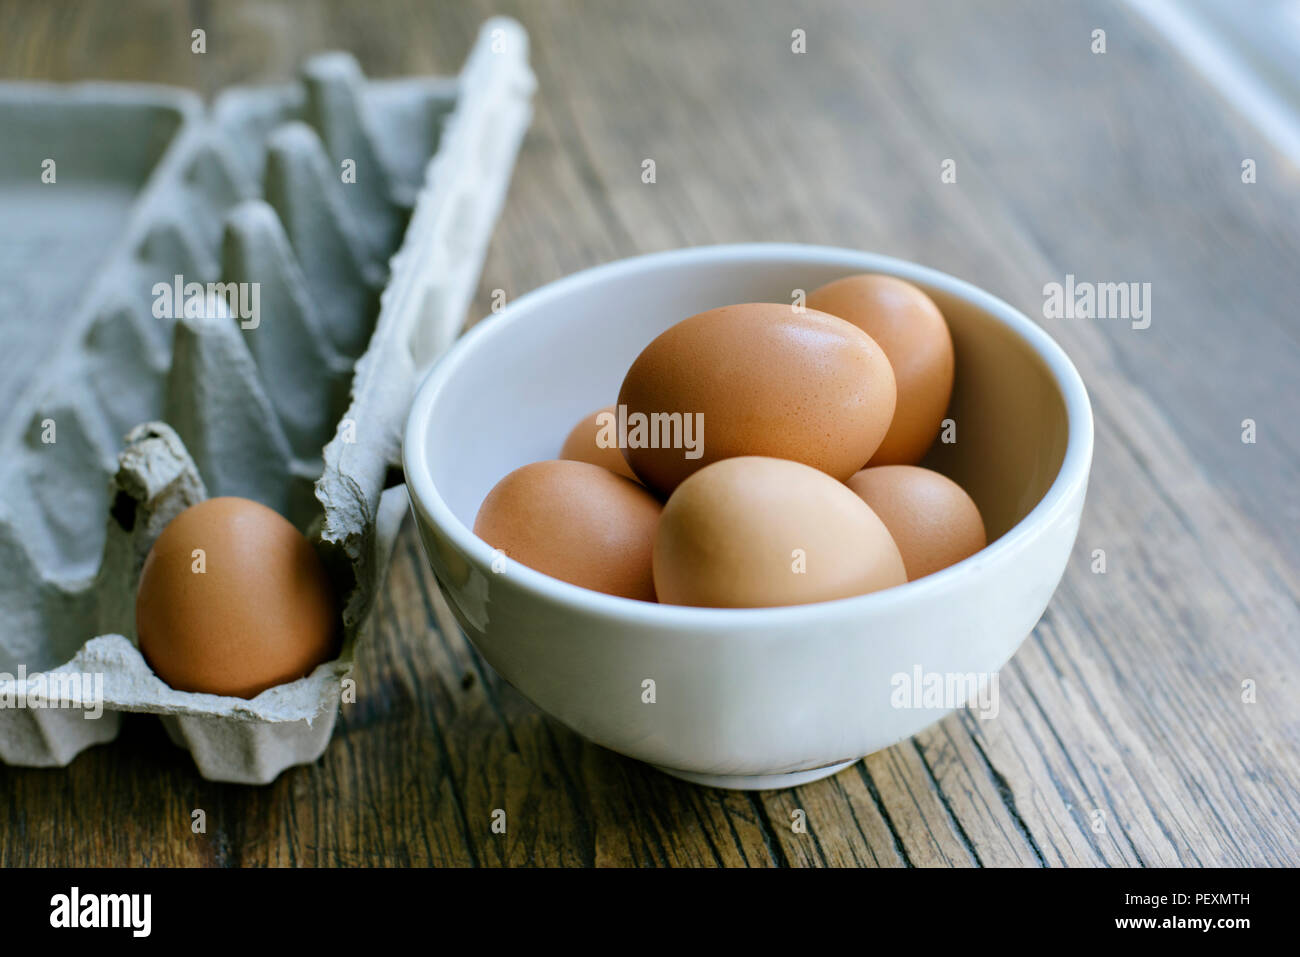 Di uova fresche in una terrina con un vicino astuccio vuoto Foto Stock